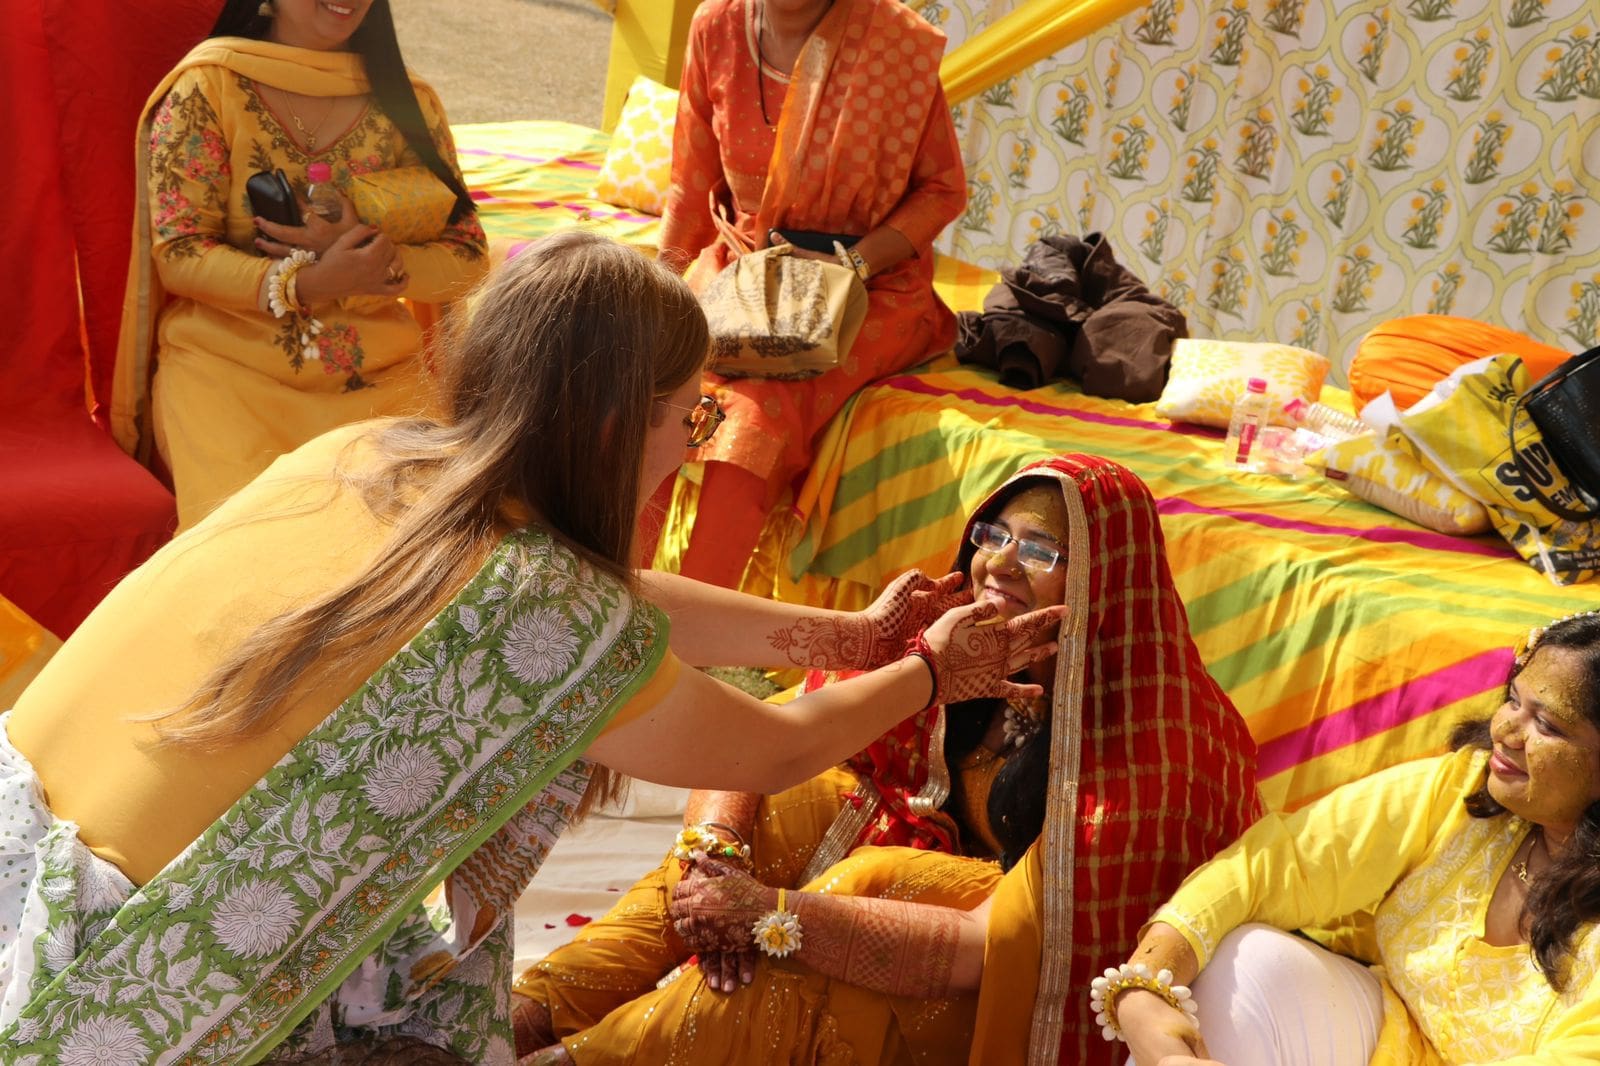 Haldi ceremonie tijdens een bruiloft in India